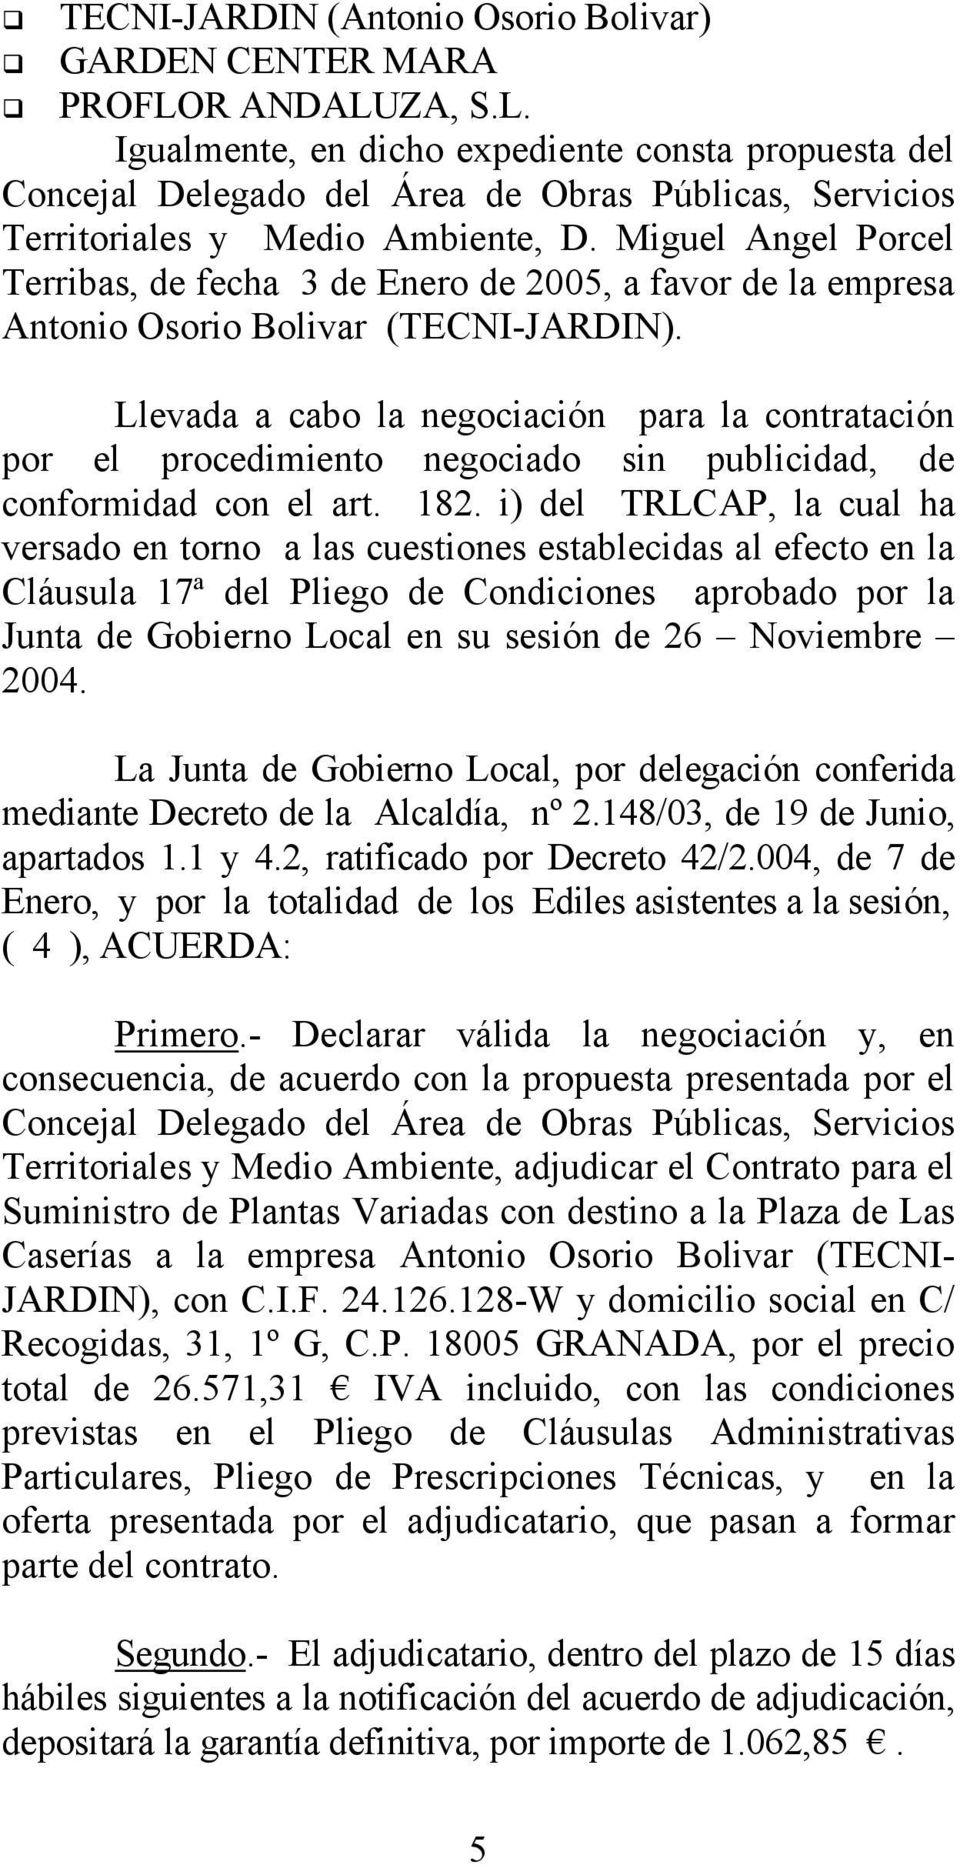 Miguel Angel Porcel Terribas, de fecha 3 de Enero de 2005, a favor de la empresa Antonio Osorio Bolivar (TECNI-JARDIN).